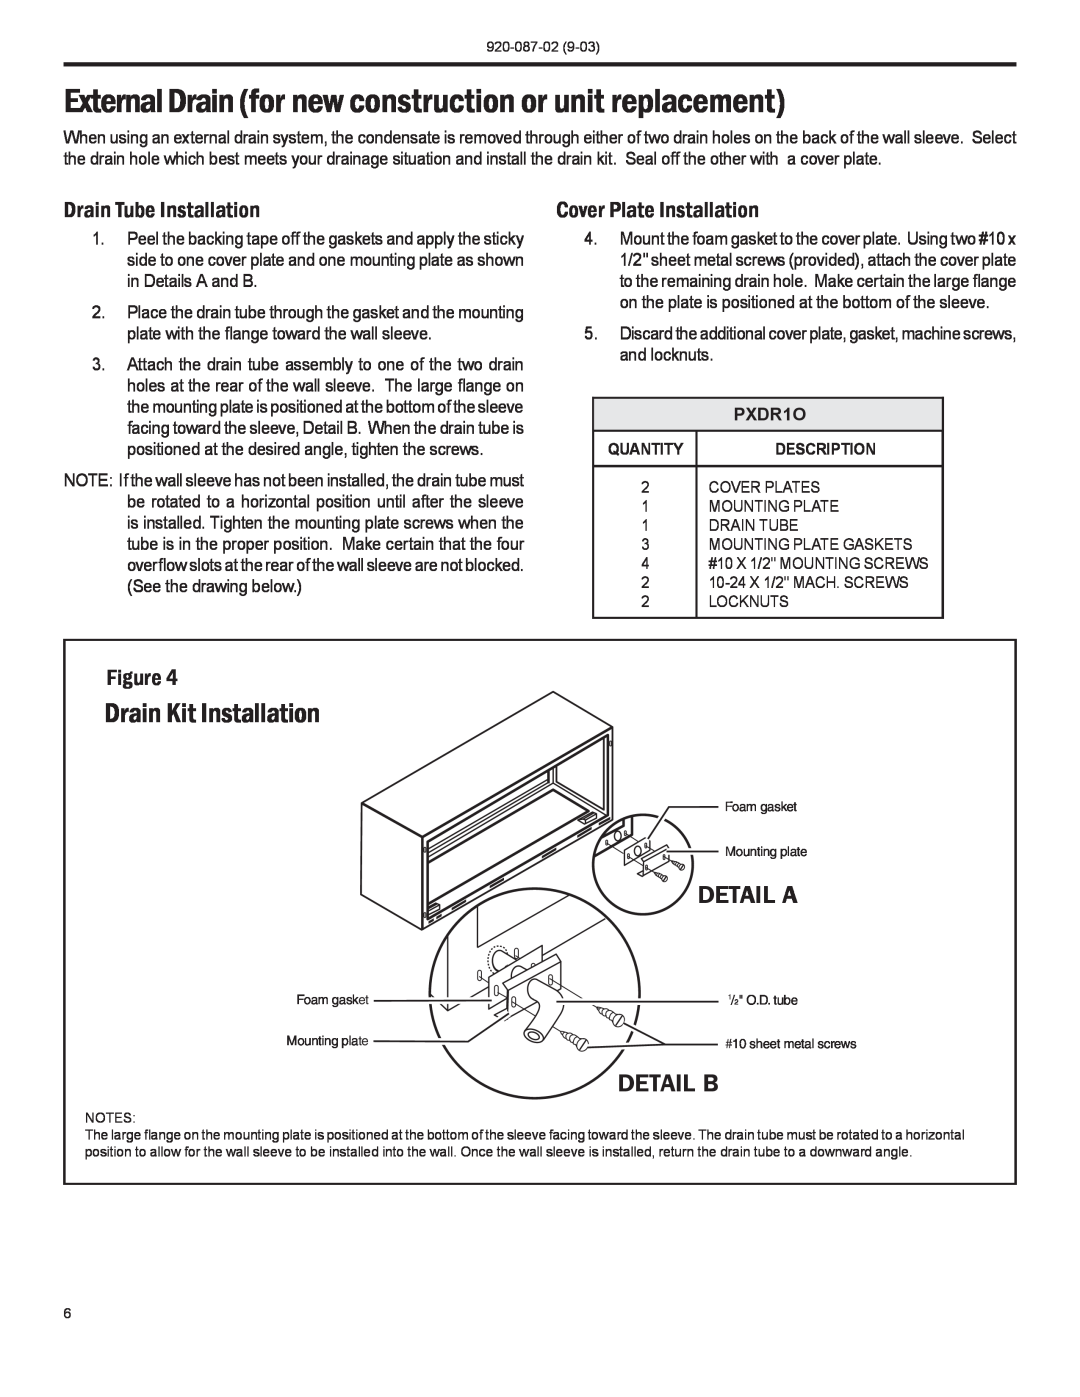 Friedrich PTAC Drain Kit Installation, Drain Tube Installation, Cover Plate Installation, PXDR1O, Detail A, Detail B 